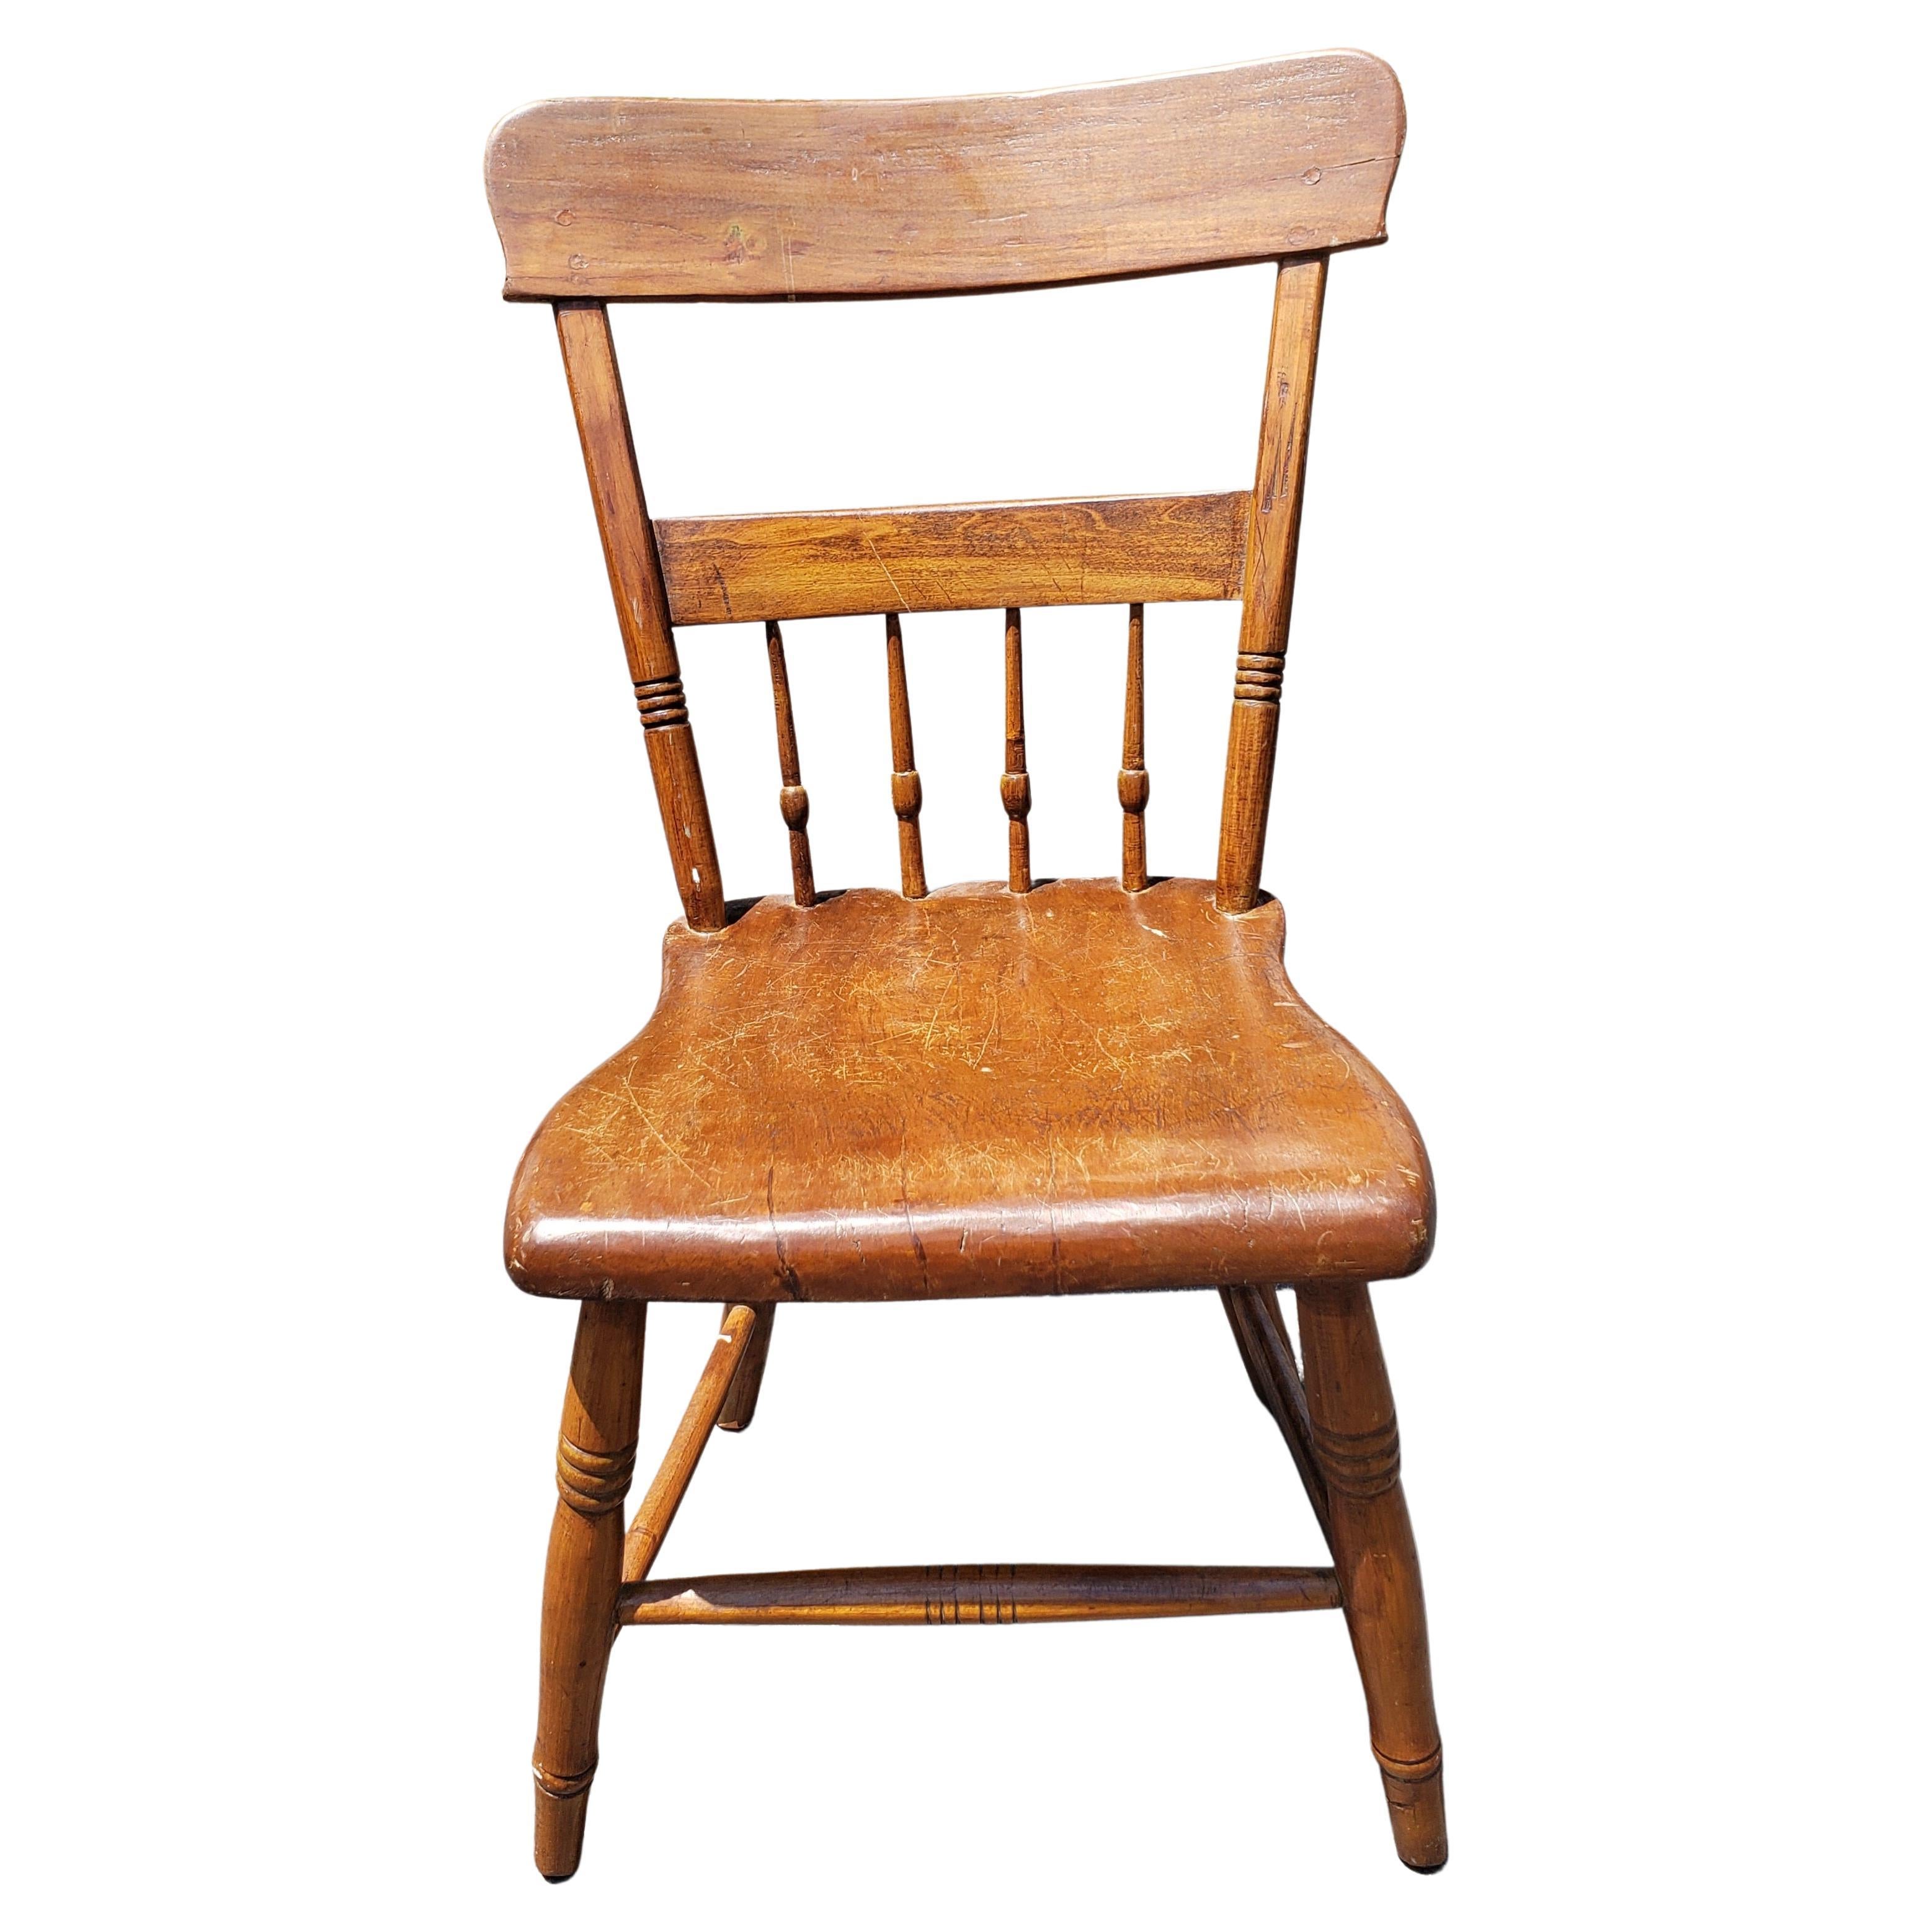 Ein spätes 19. Jahrhundert im frühen amerikanischen Stil  HandCrafted Maple Plank Chair mit toller Alterungspatina. Es ist eine großartige Ergänzung für Ihre Sammlung.
Maesures 18,5 